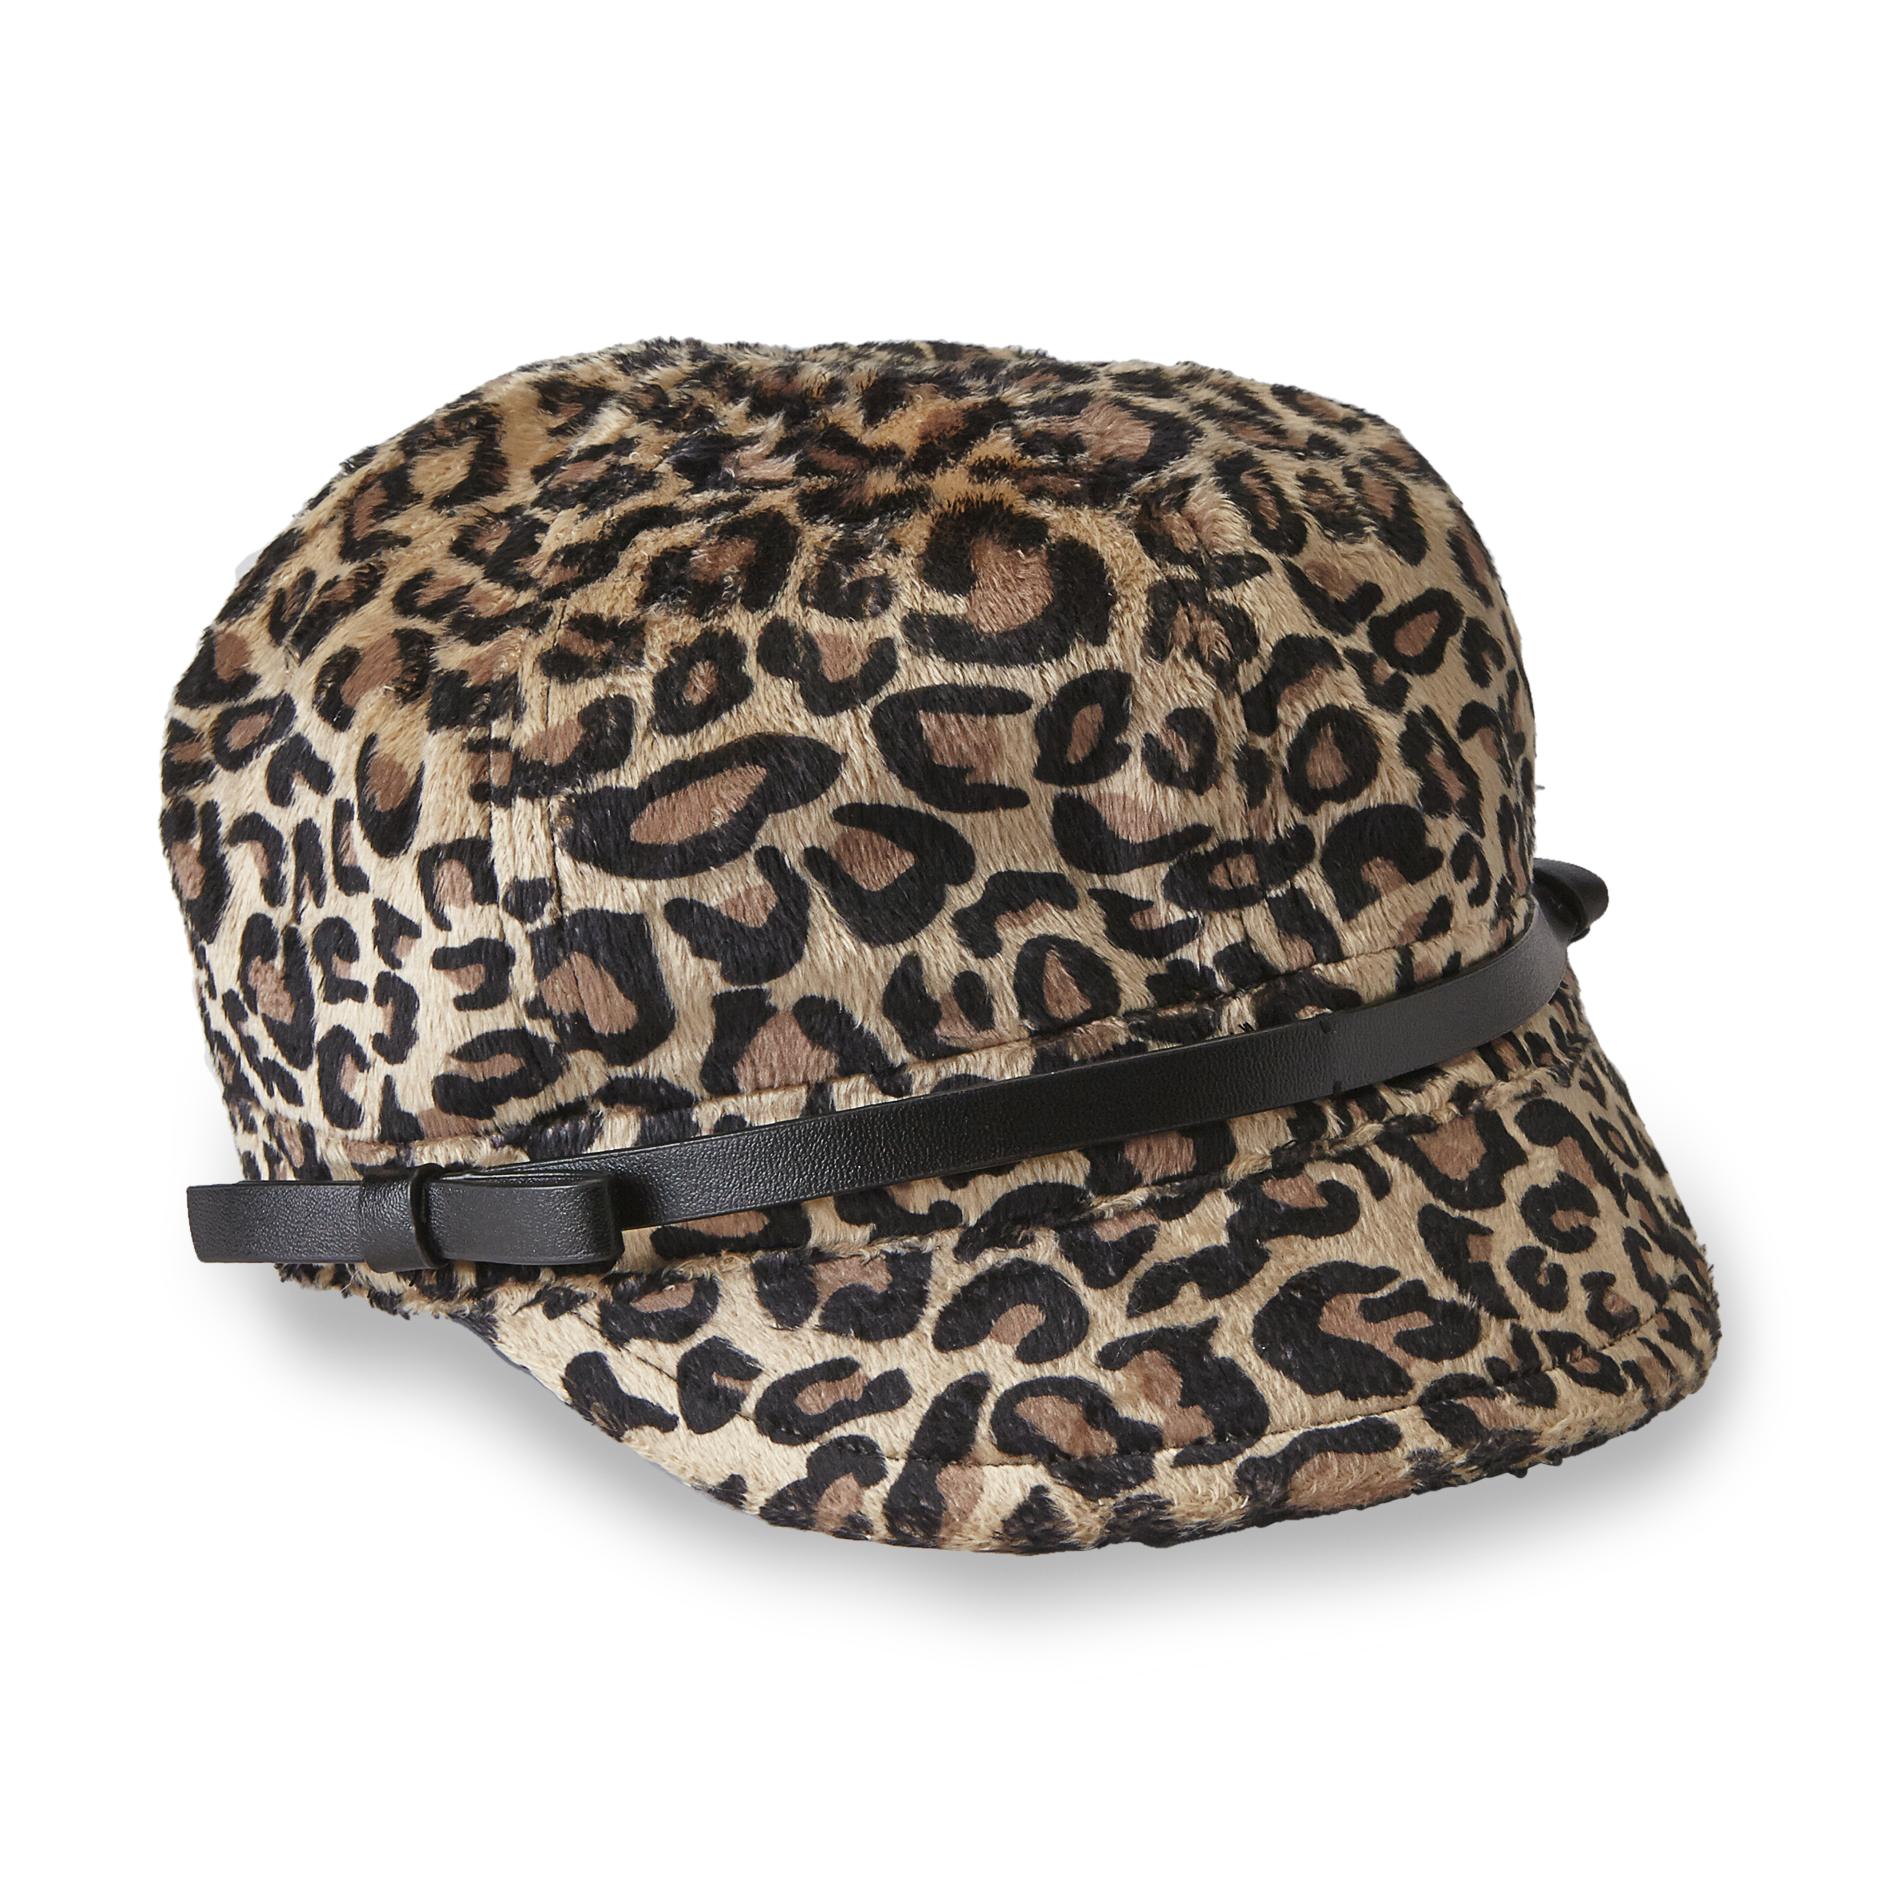 Joe Boxer Junior's Faux Fur Cabbie Hat - Cheetah Print